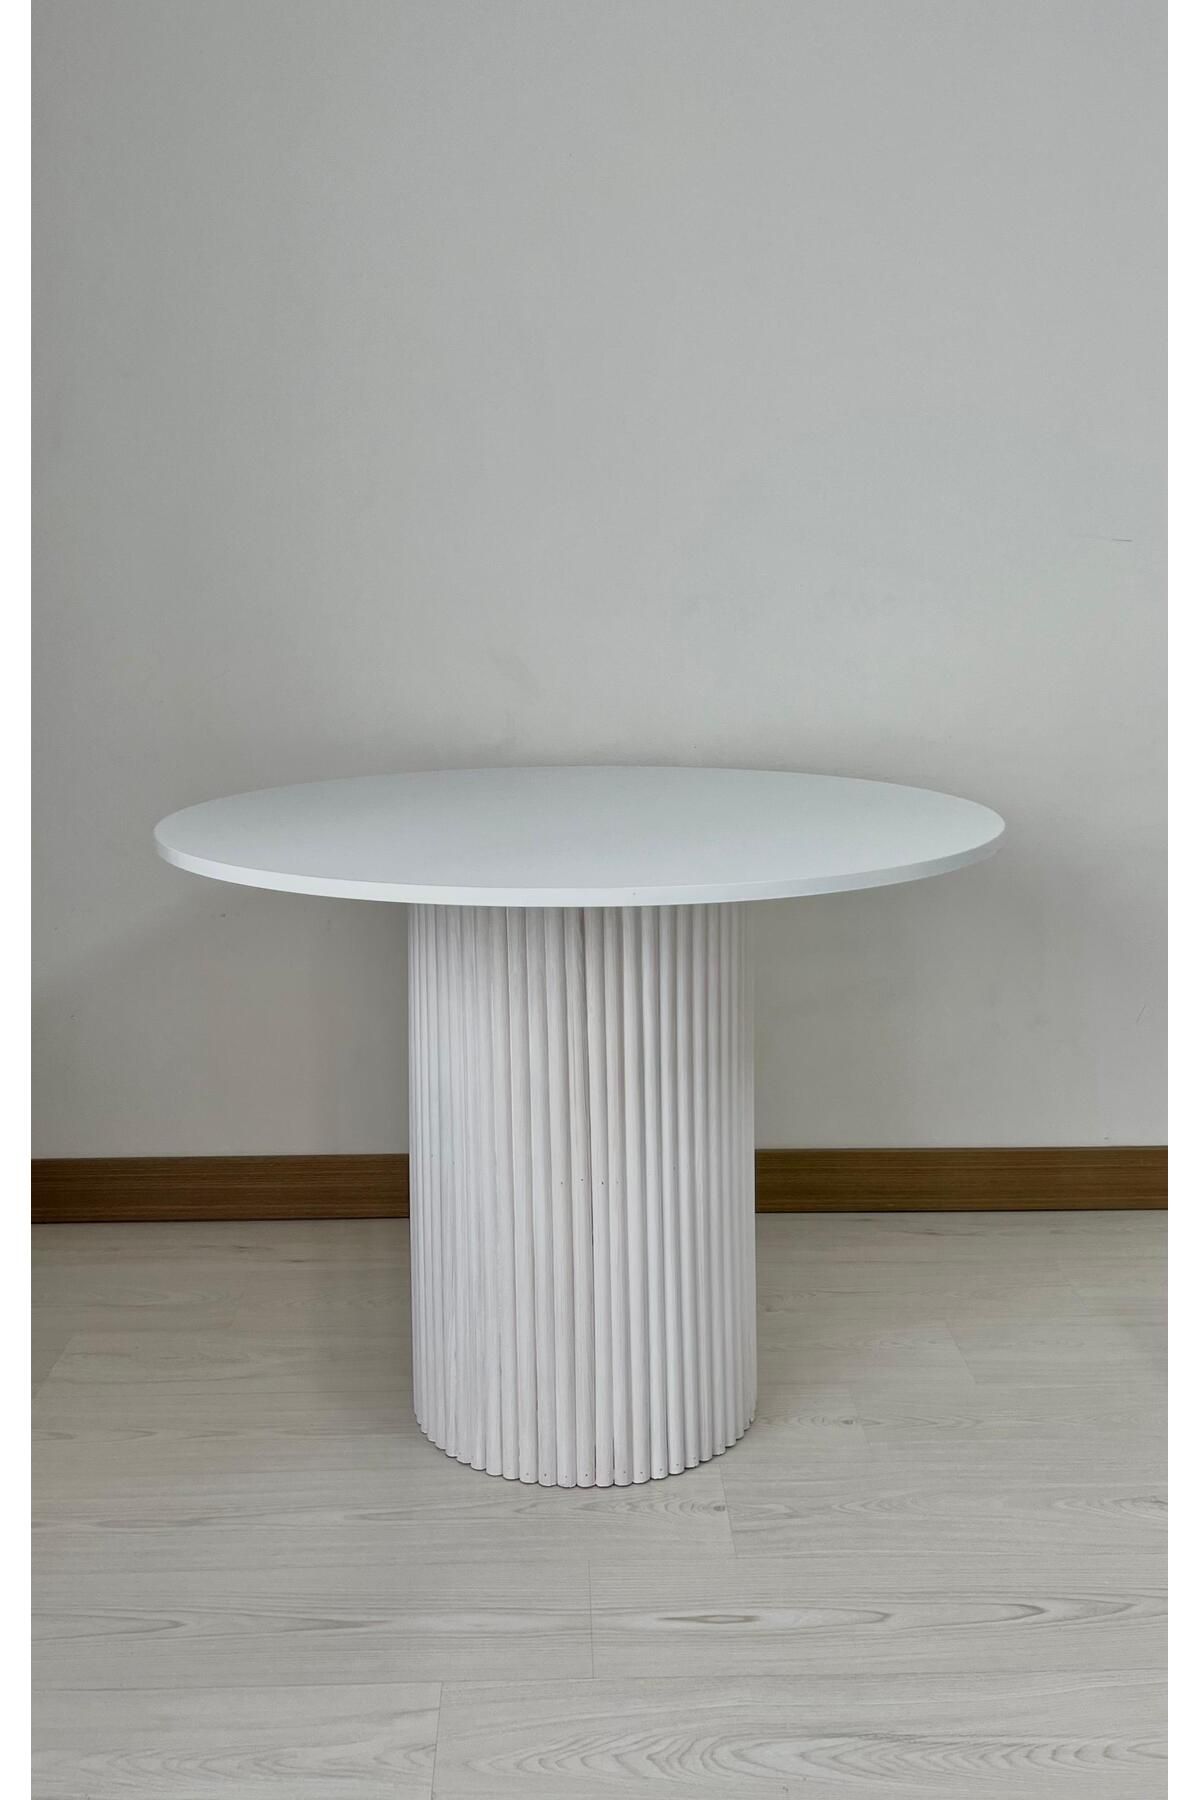 Seyvey Dizayn Özel tasarım mega ayak masa mutfak masası yemek masası 103 cm